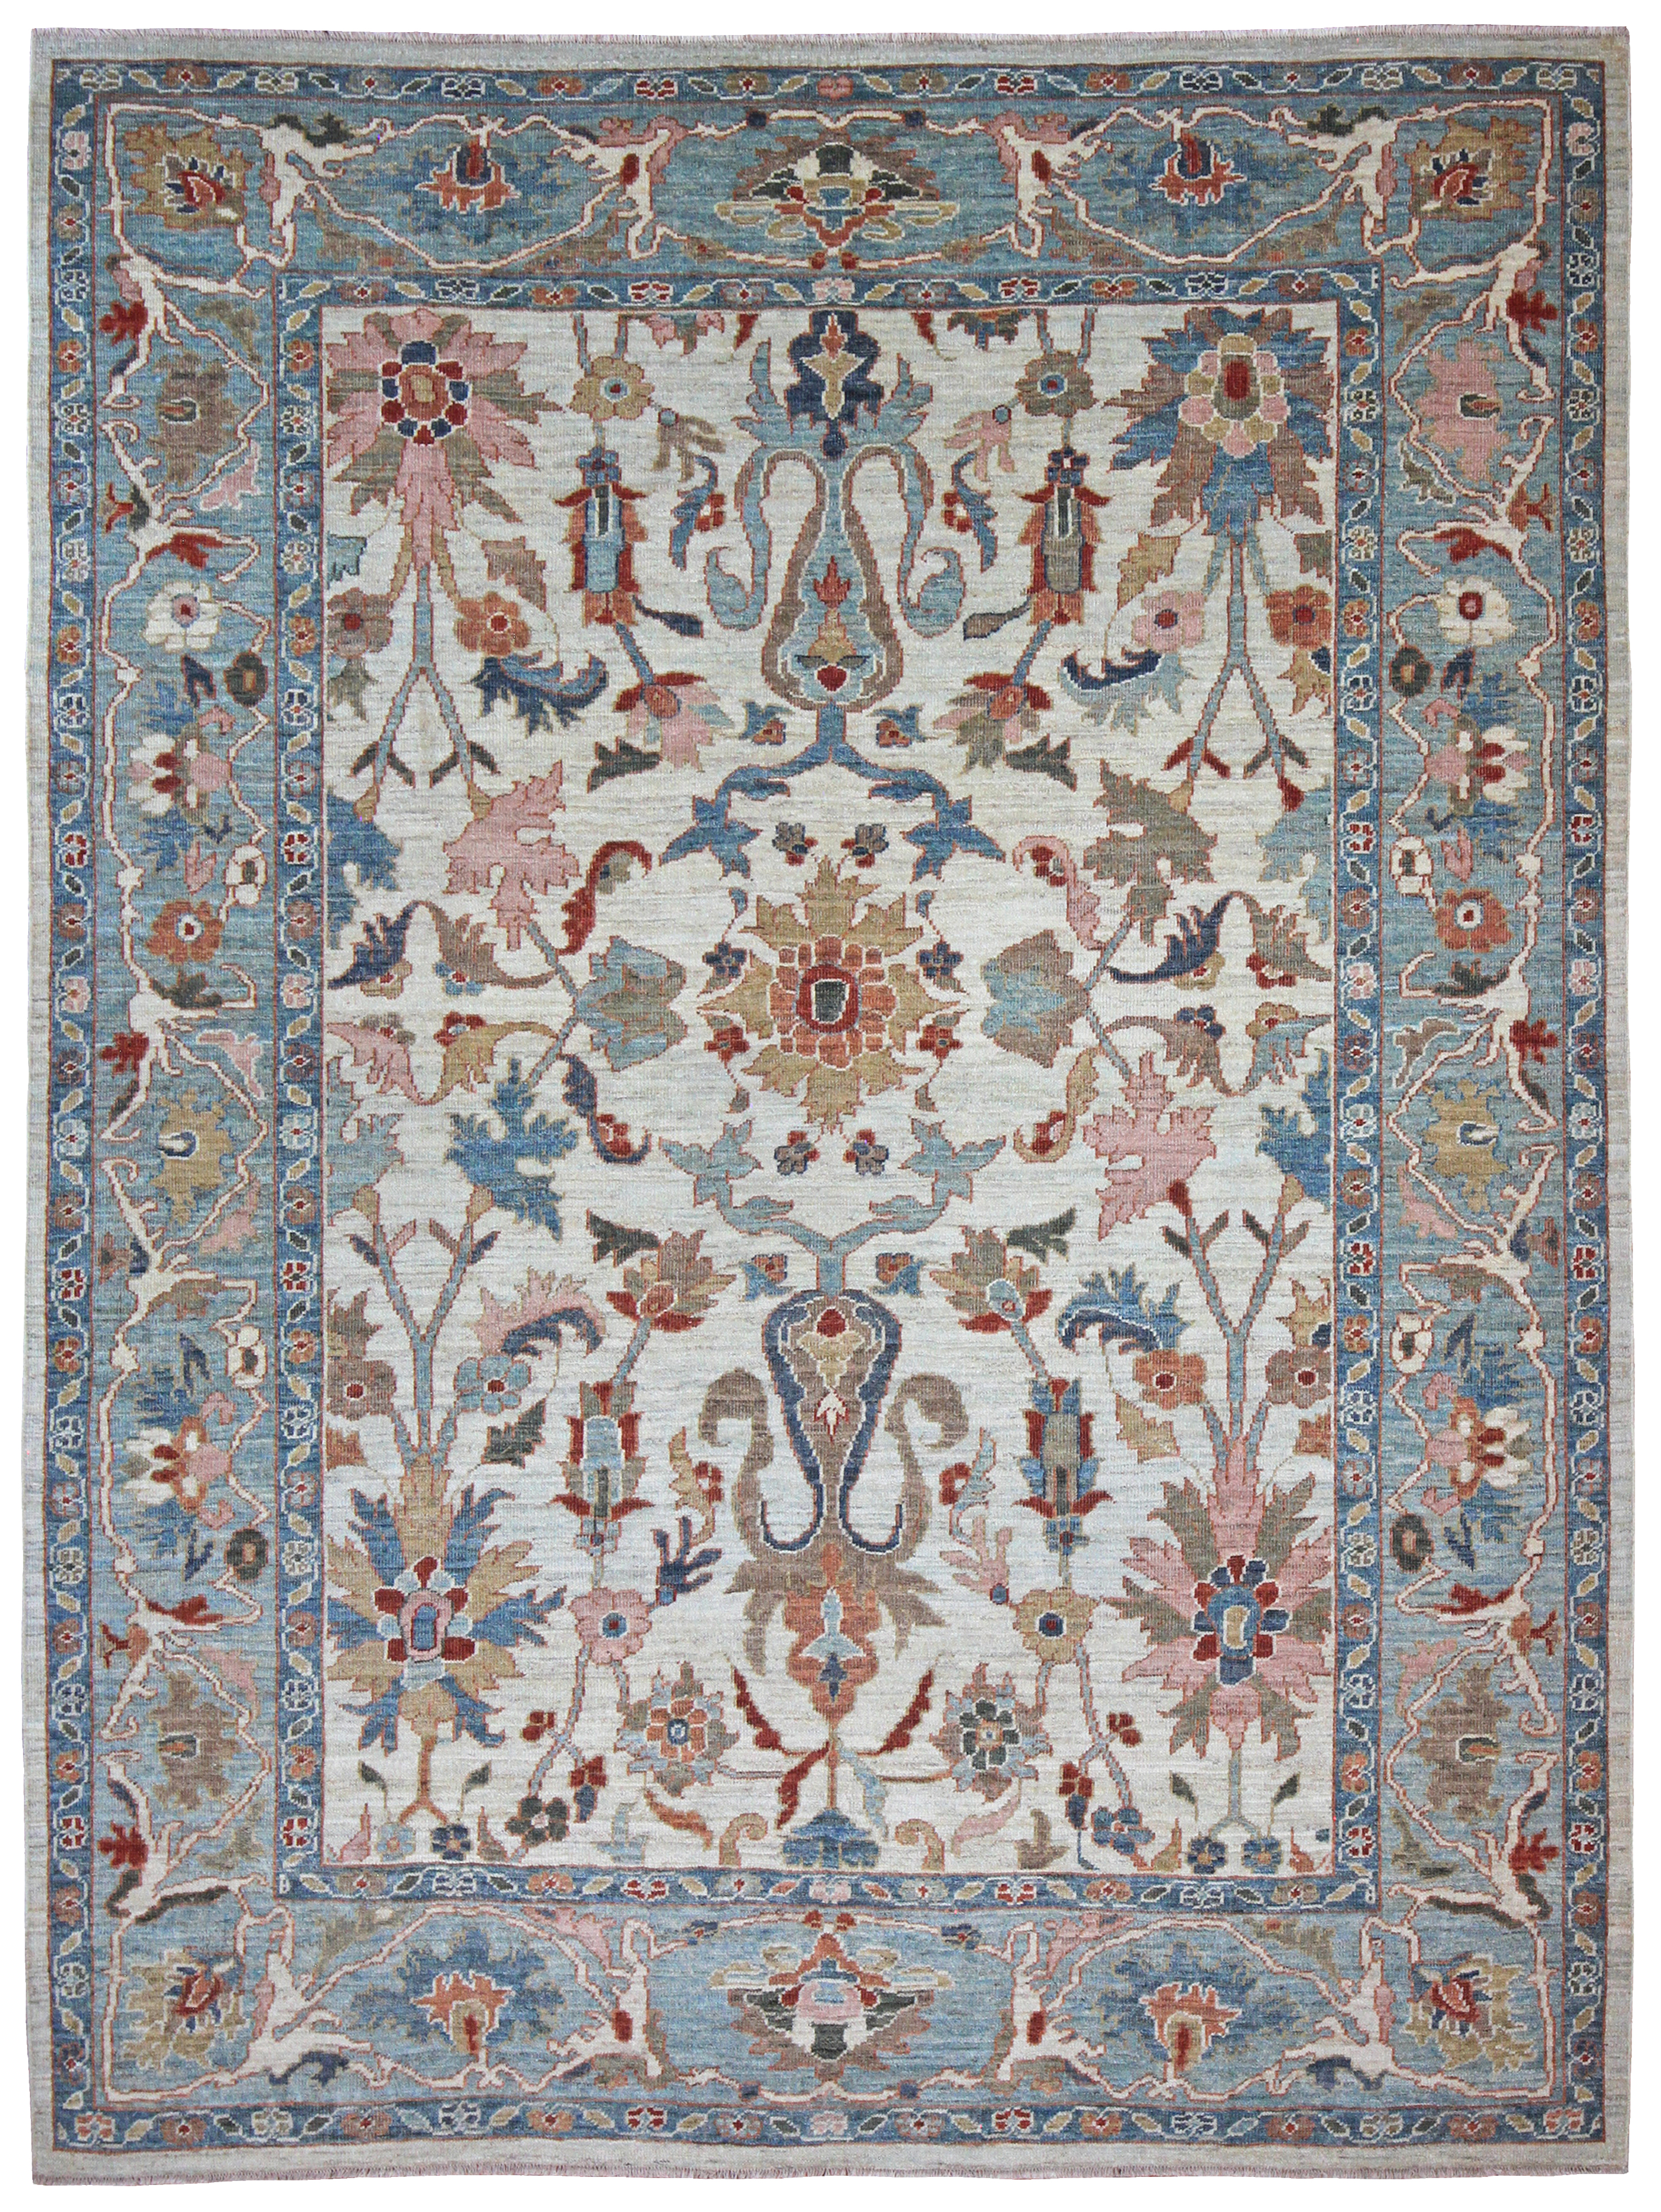 Sultanabad Carpet Farnham Antique Carpets